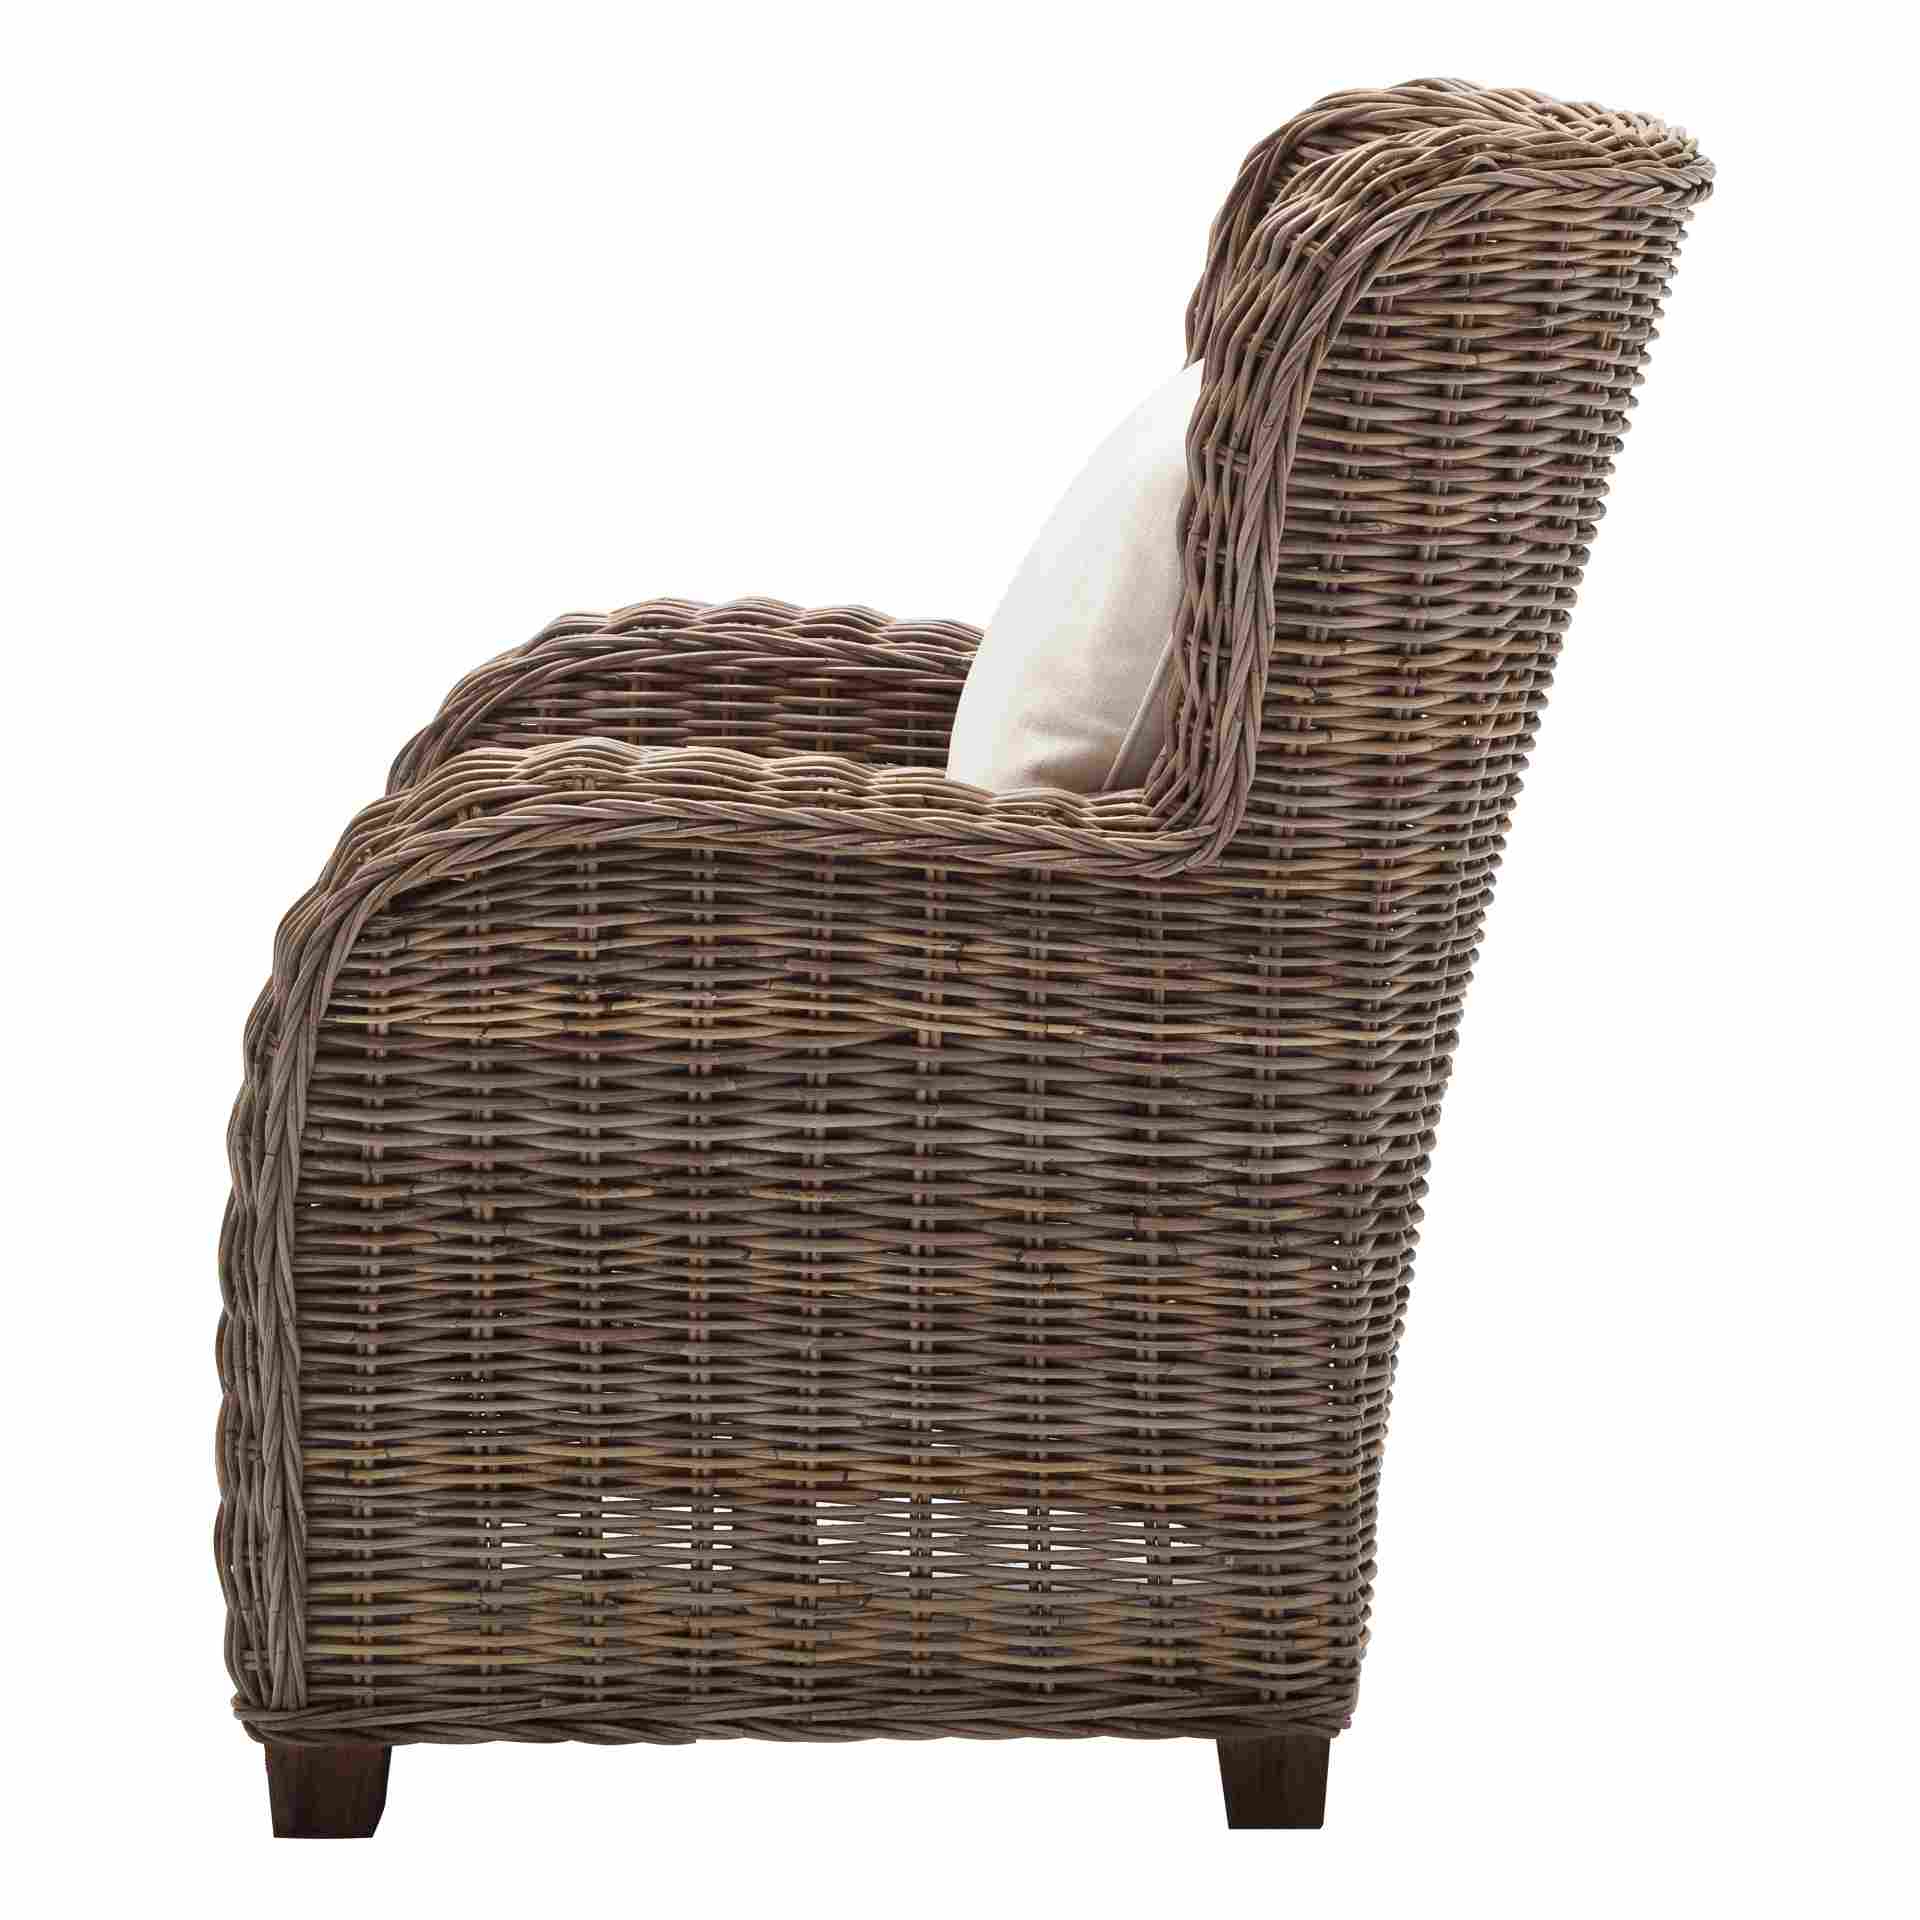 Der Armlehnstuhl Queen überzeugt mit seinem Landhaus Stil. Gefertigt wurde er aus Kabu Rattan, welches einen natürlichen Farbton besitzt. Der Stuhl verfügt über eine Armlehne. Die Sitzhöhe beträgt beträgt 35 cm.